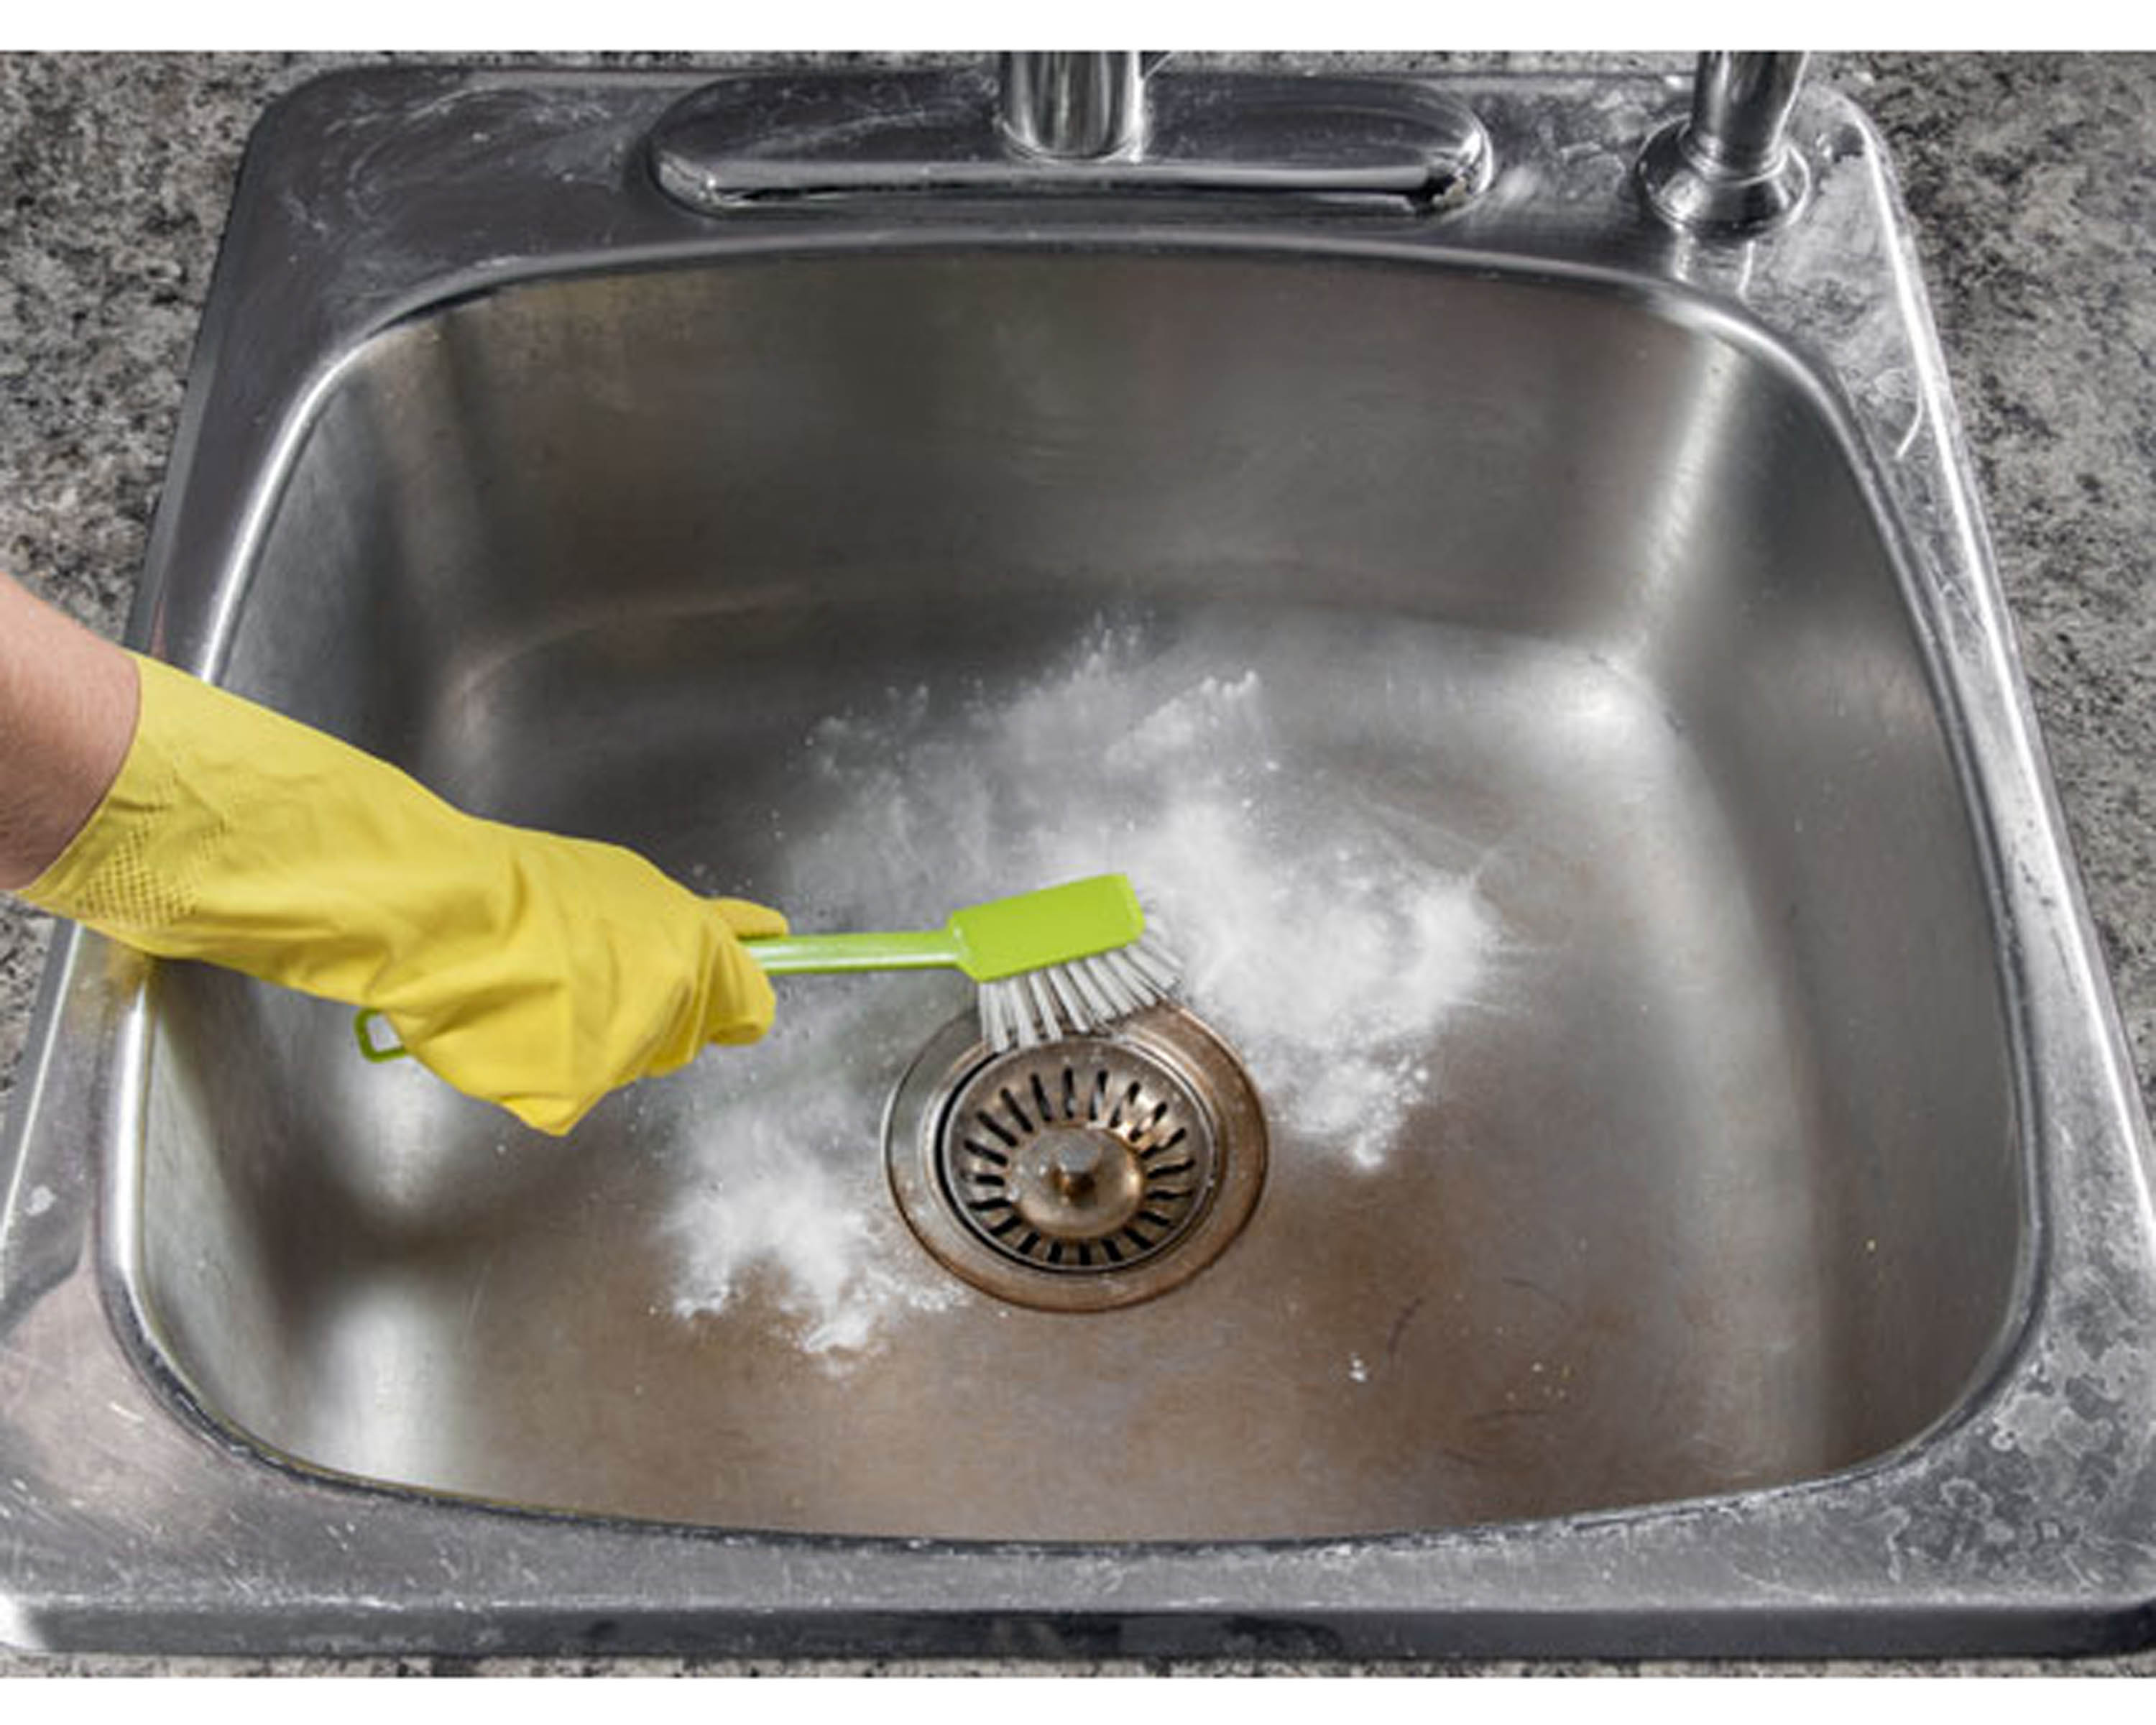 Bồn rửa nhà bếp. Bồn rửa nhà bếp là vị trí thứ hai chứa nhiều vi khuẩn trong nhà, và miếng rửa bát là số một. Vi khuẩn từ các thực phẩm chưa chế biến phát triển mạnh trong bồn rửa nhà bạn, vì vậy bạn phải làm sạch bồn rửa với chất tẩy rửa khử trùng mỗi ngày. Bạn cũng nên hấp miếng rửa bát trong lò vi sóng khoảng hai phút mỗi ngày để loại bỏ vi khuẩn gây hại ẩn chứa trong đó.